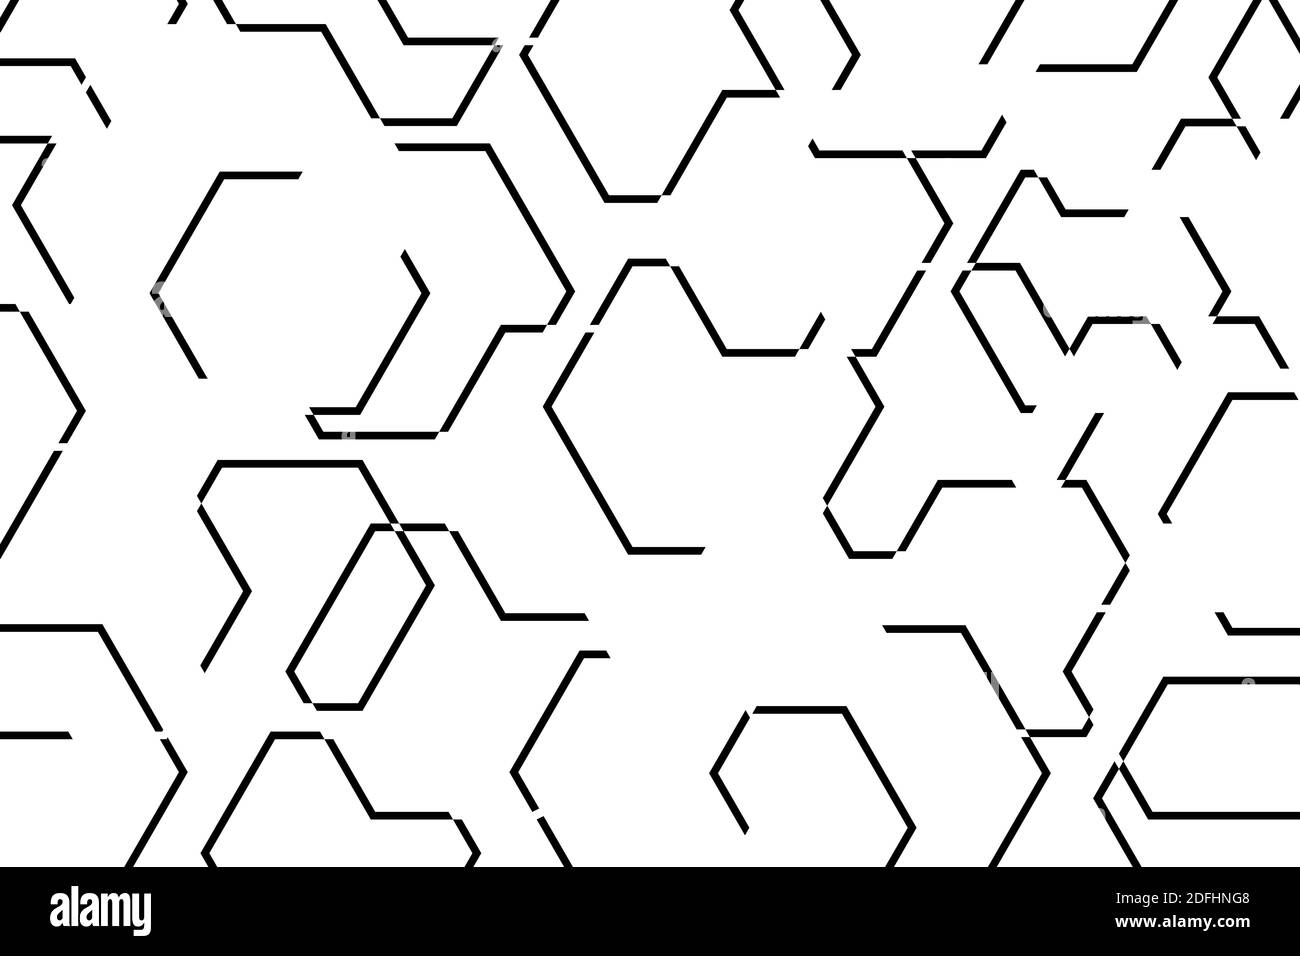 Schema di sfondo astratto realizzato con linee che formano forme geometriche organiche. Arte vettoriale moderna, semplice, minimale Foto Stock